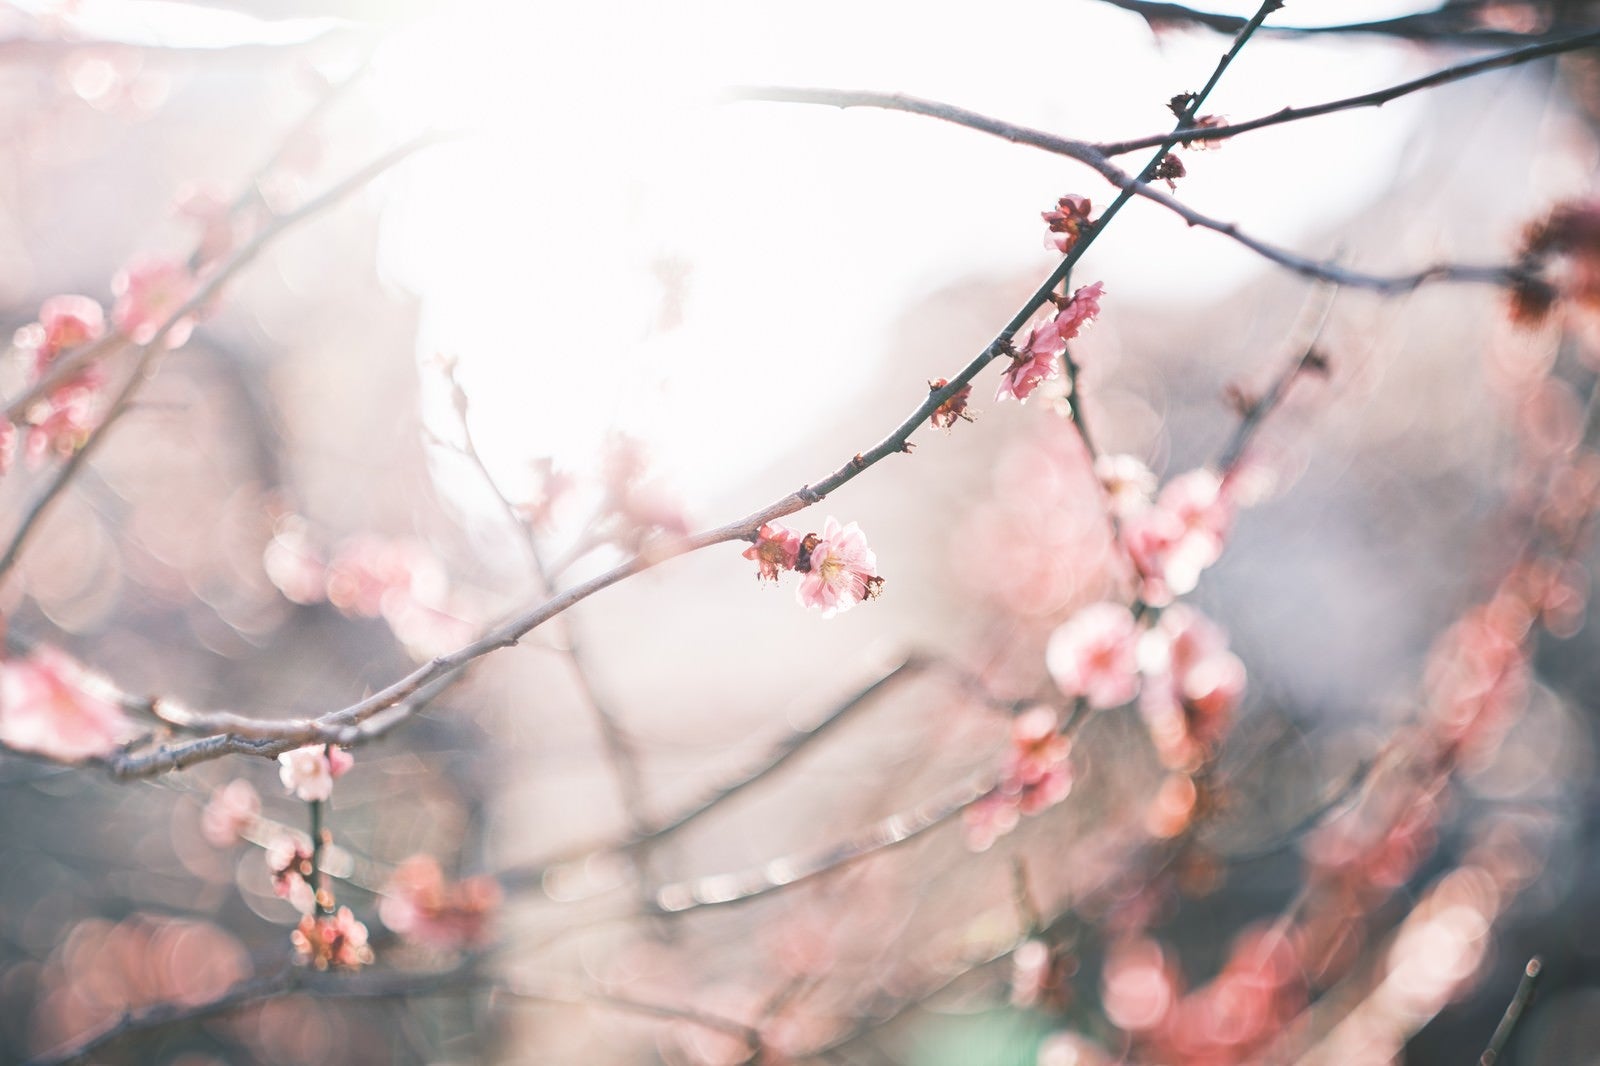 「梅の花に注ぐ日差し」の写真